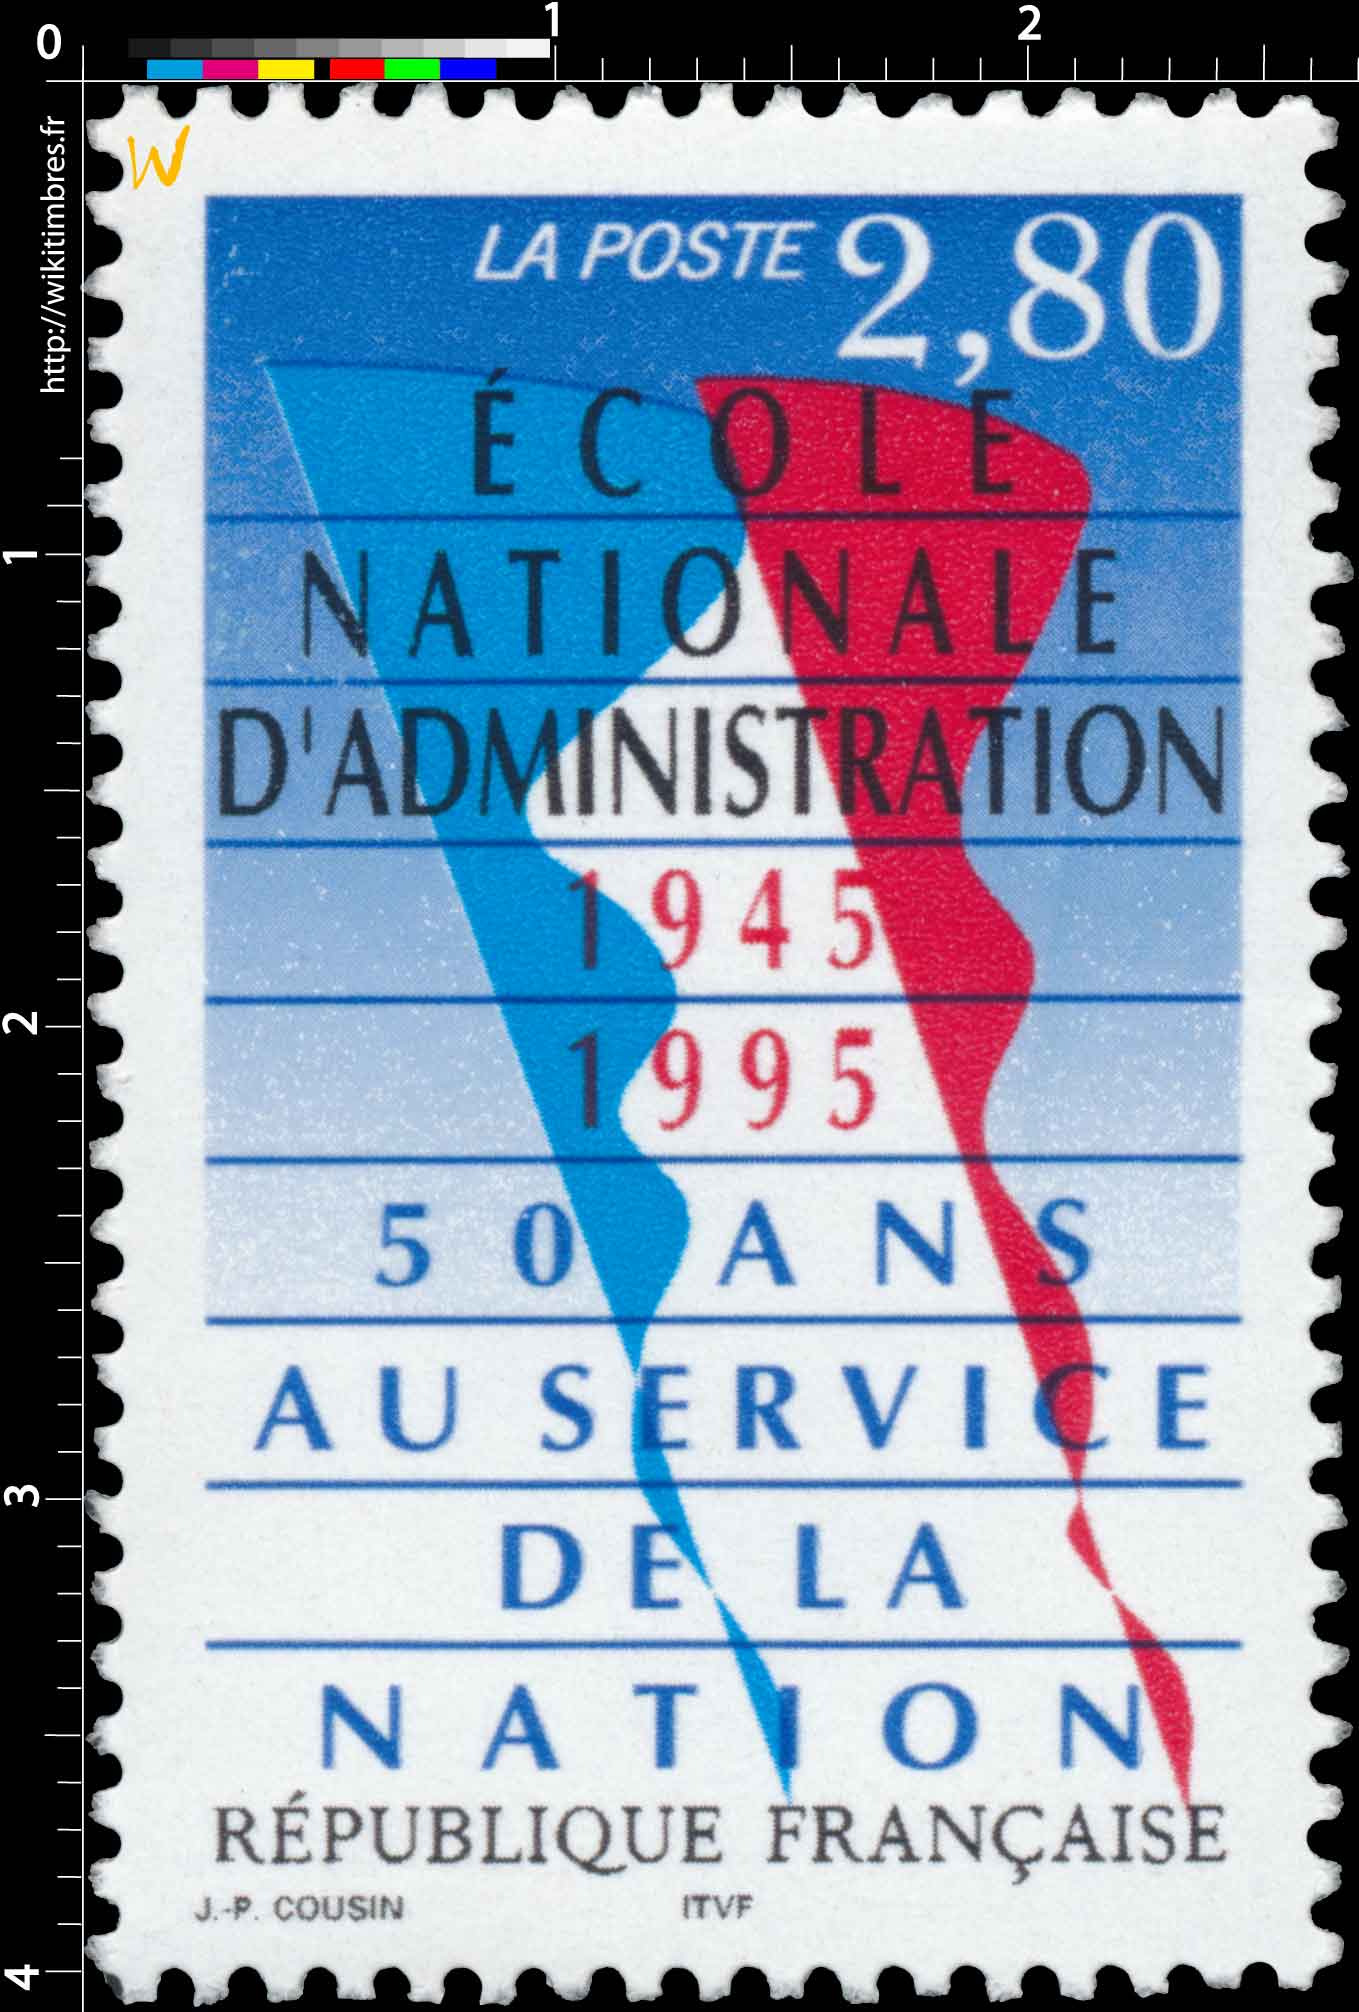 ÉCOLE NATIONALE D'ADMINISTRATION 1945-1995 50 ANS AU SERVICE DE LA NATION